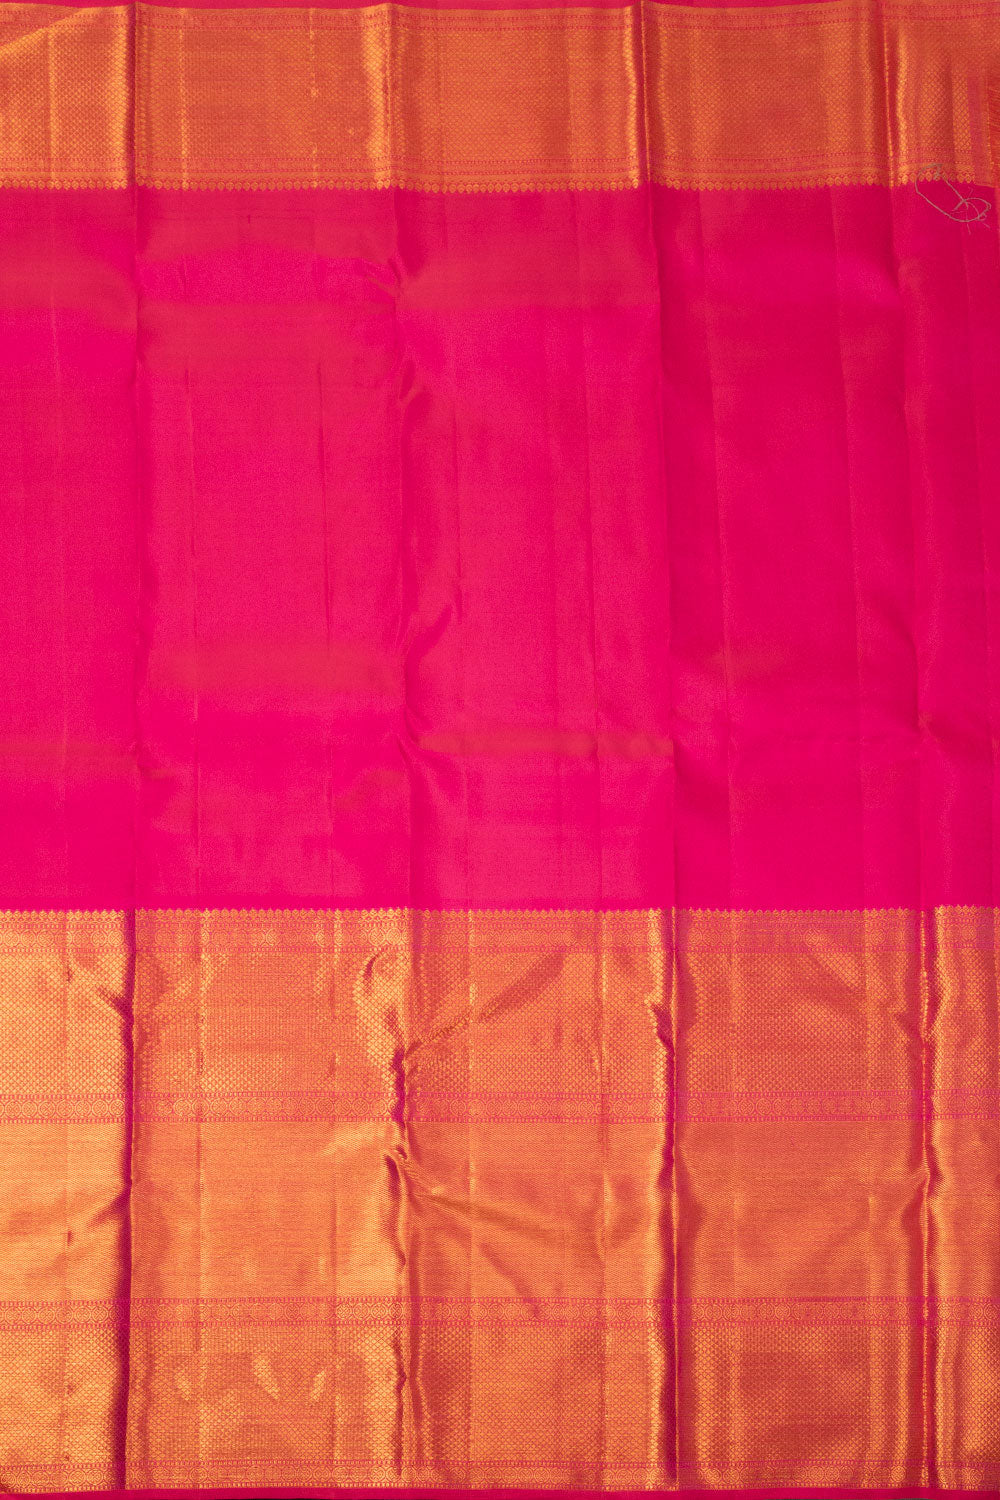 Dual Tone Pink Bridal Kanjivaram Silk Saree - Avishya